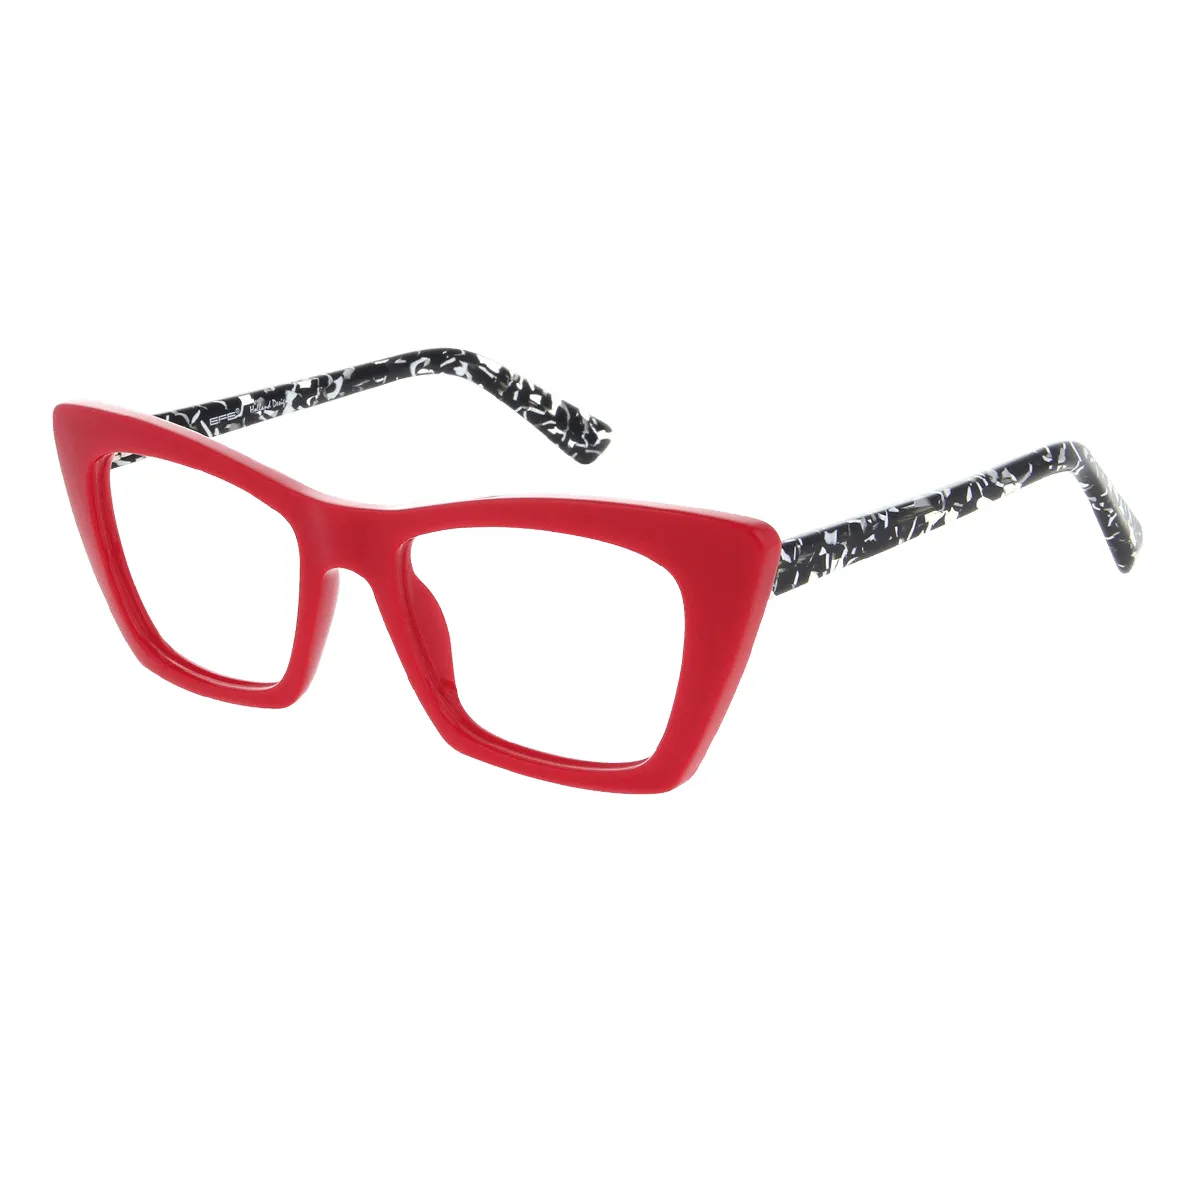 Alberta - Cat-eye Red Glasses for Women